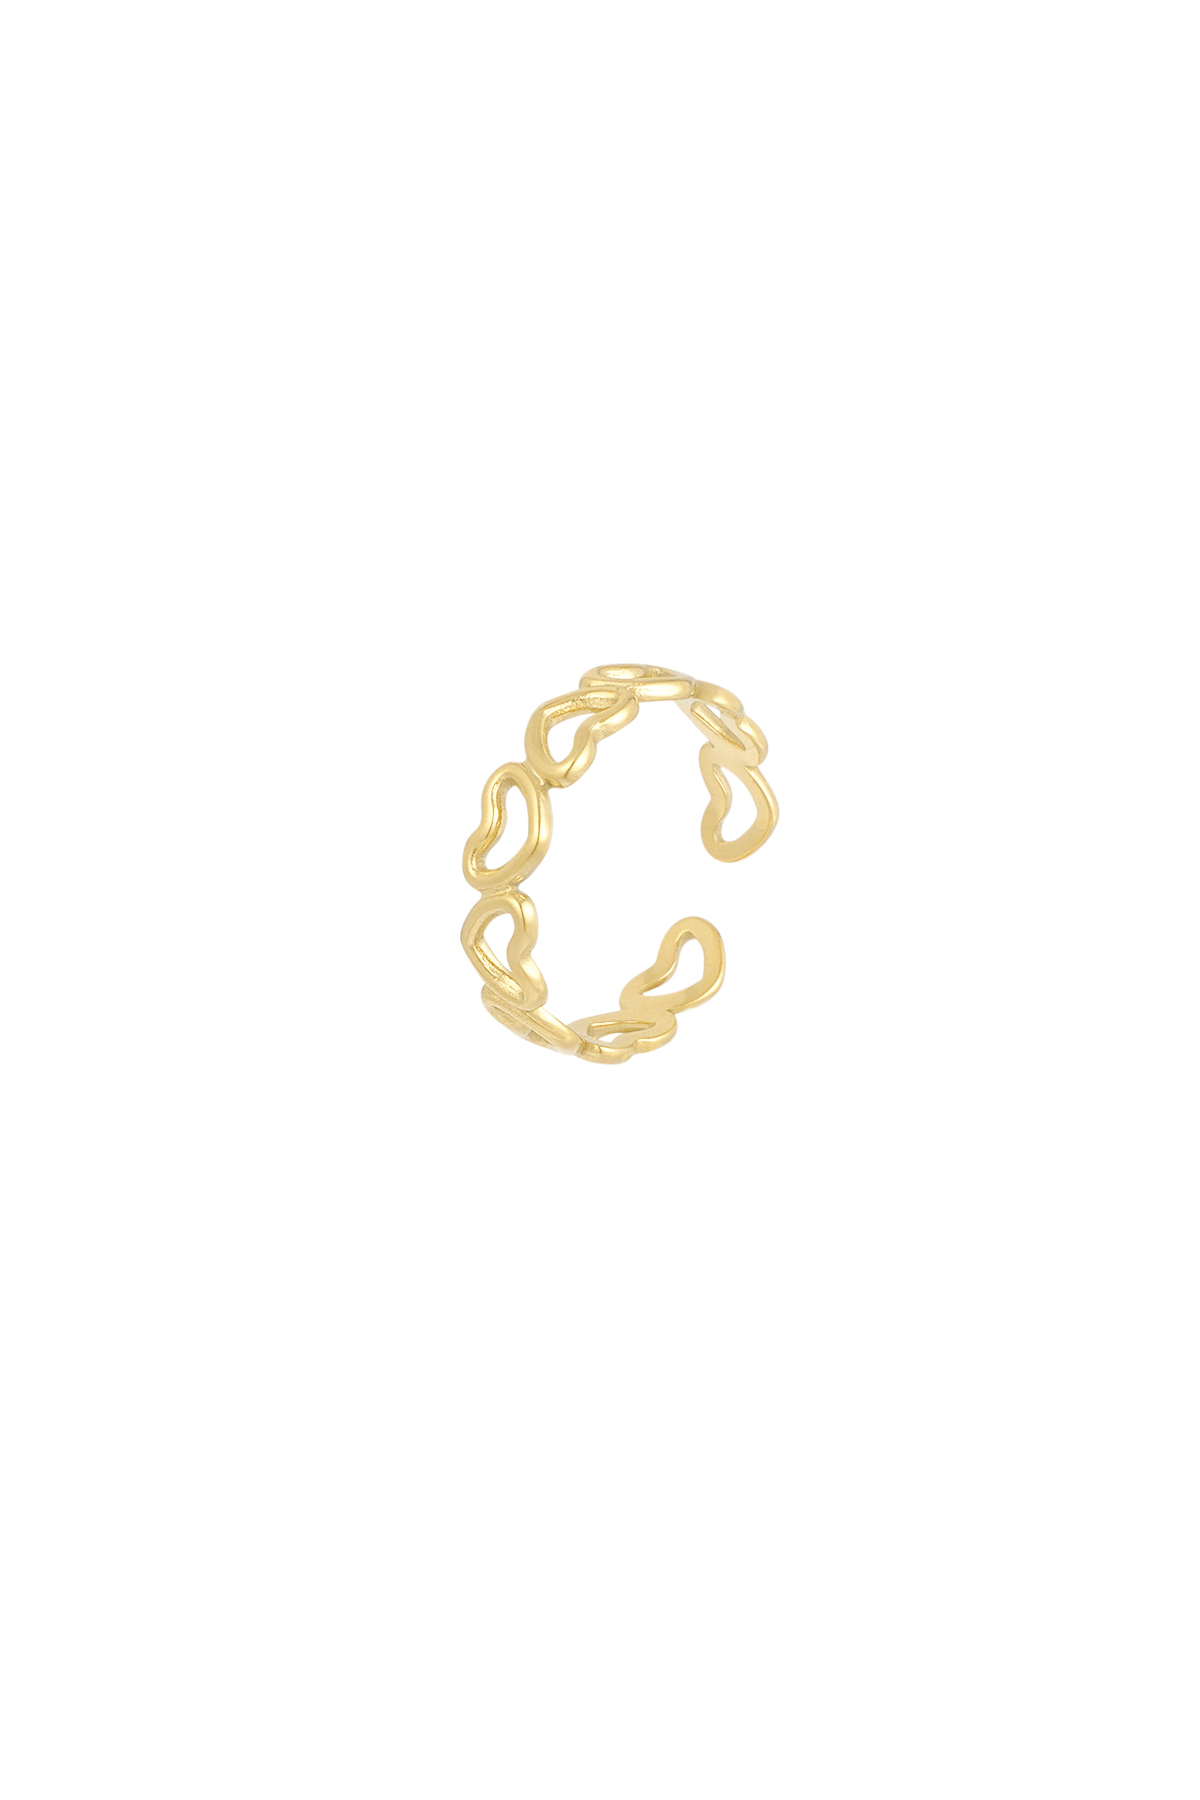 Yüzüğün her yeri sevgiyle dolu - altın  Resim3